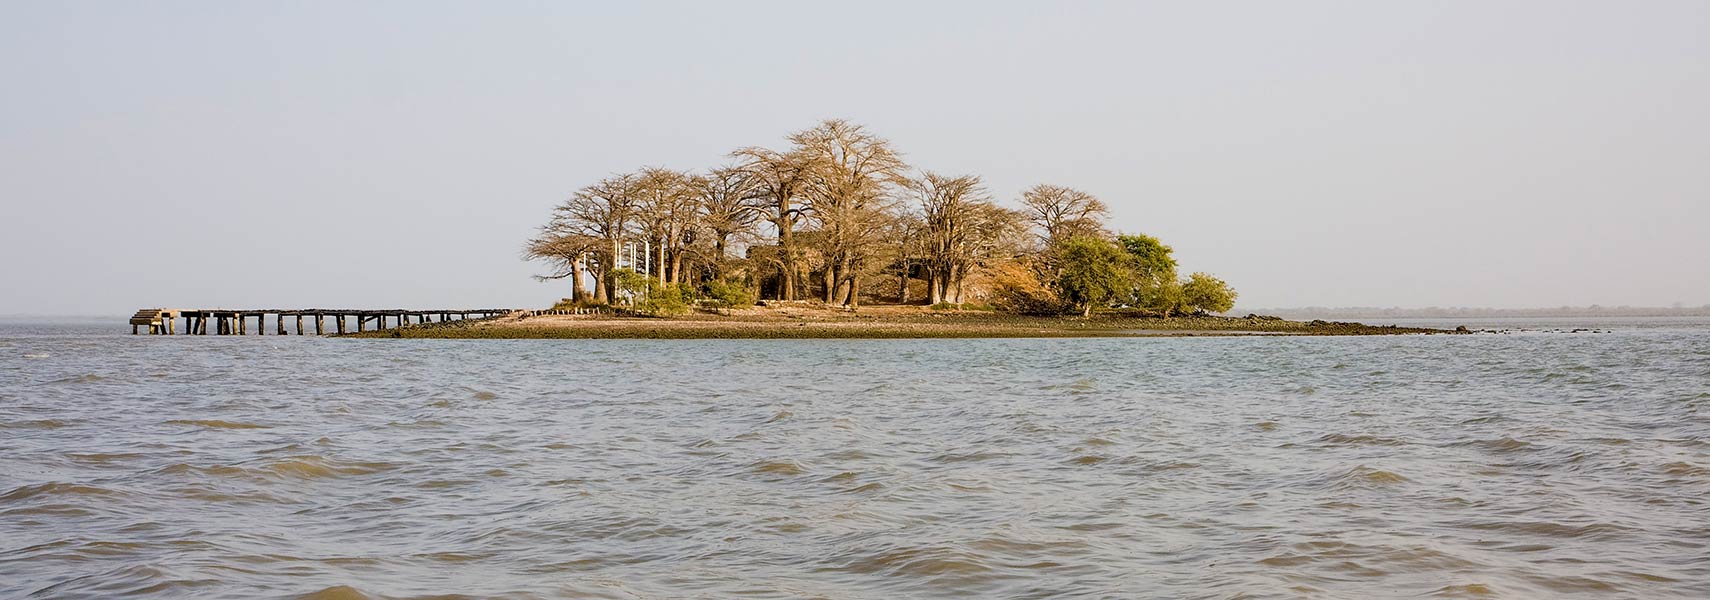 James Island (Kunta Kinteh Island) Gambia River